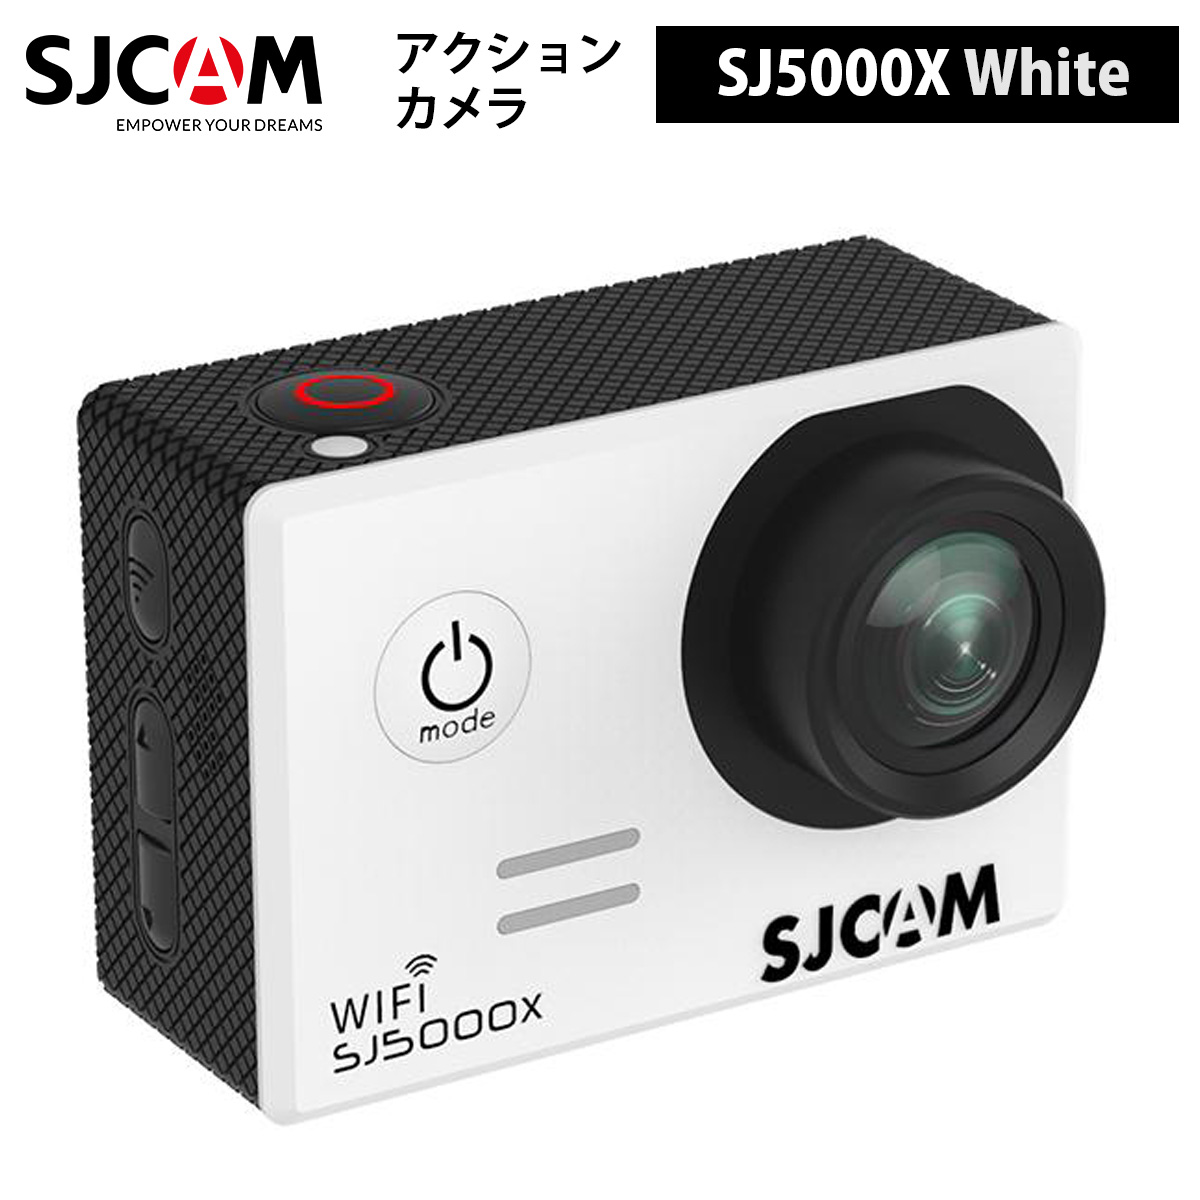 注文後の変更キャンセル返品 日本語サポート対応 正規輸入代理店商品 1年保証 ポイント3倍実施中 SJCAM 新着セール アクションカメラ 色：ホワイト SJ5000X